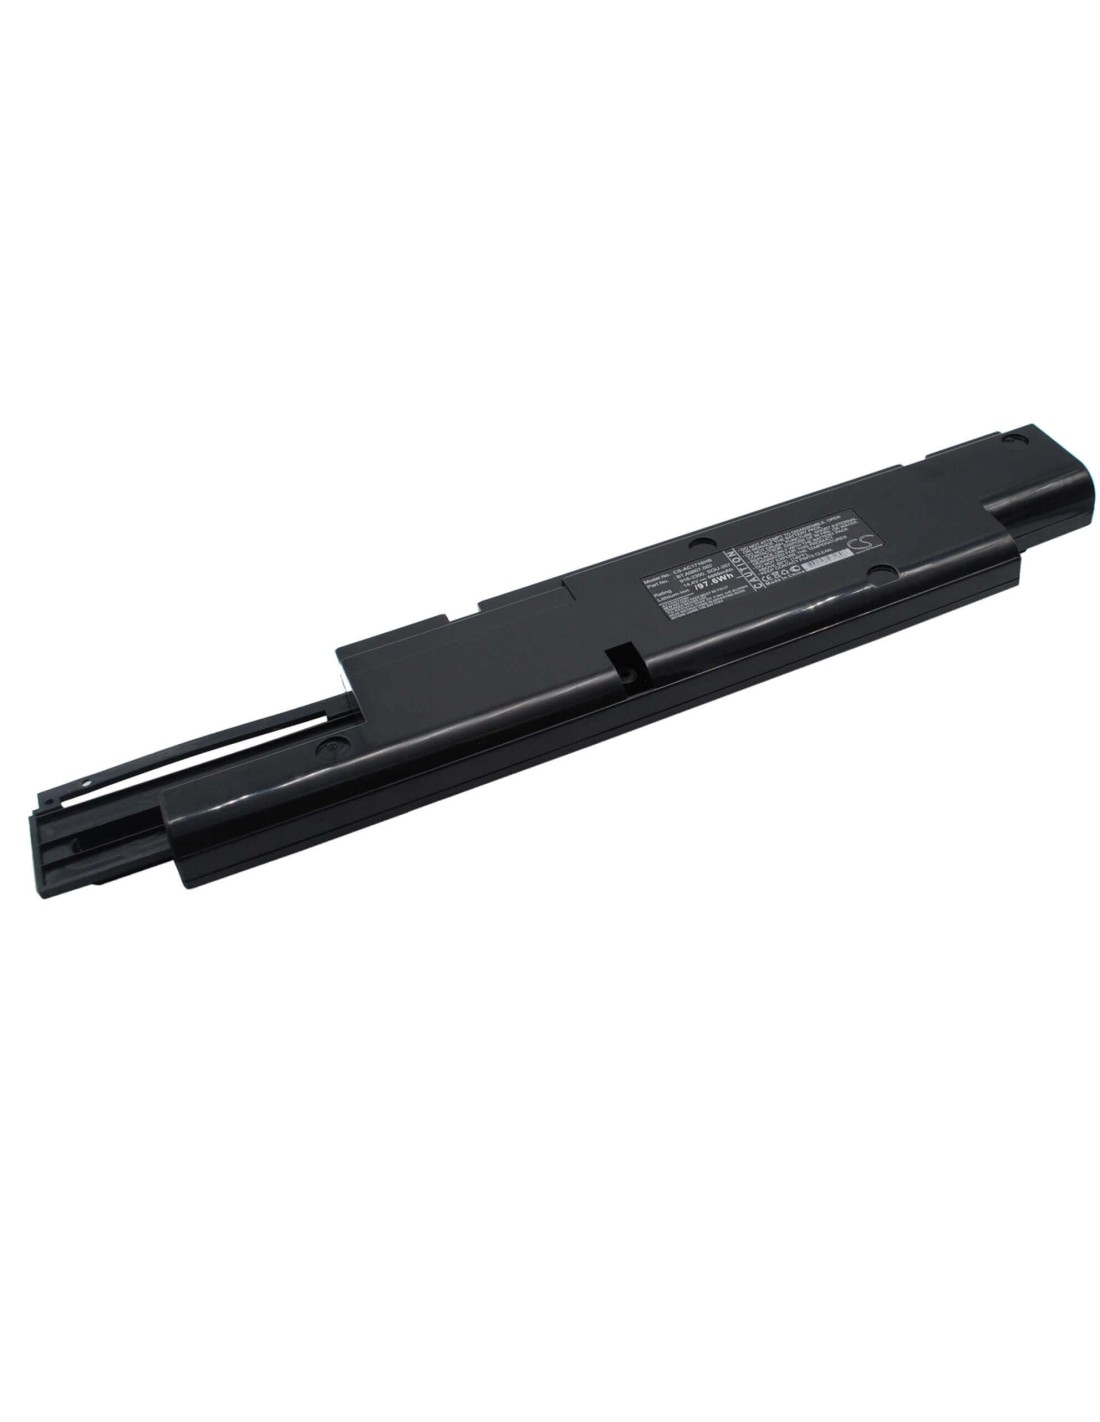 Black Battery for Acer Aspire 1700, Aspire 1710 14.4V, 6600mAh - 95.04Wh